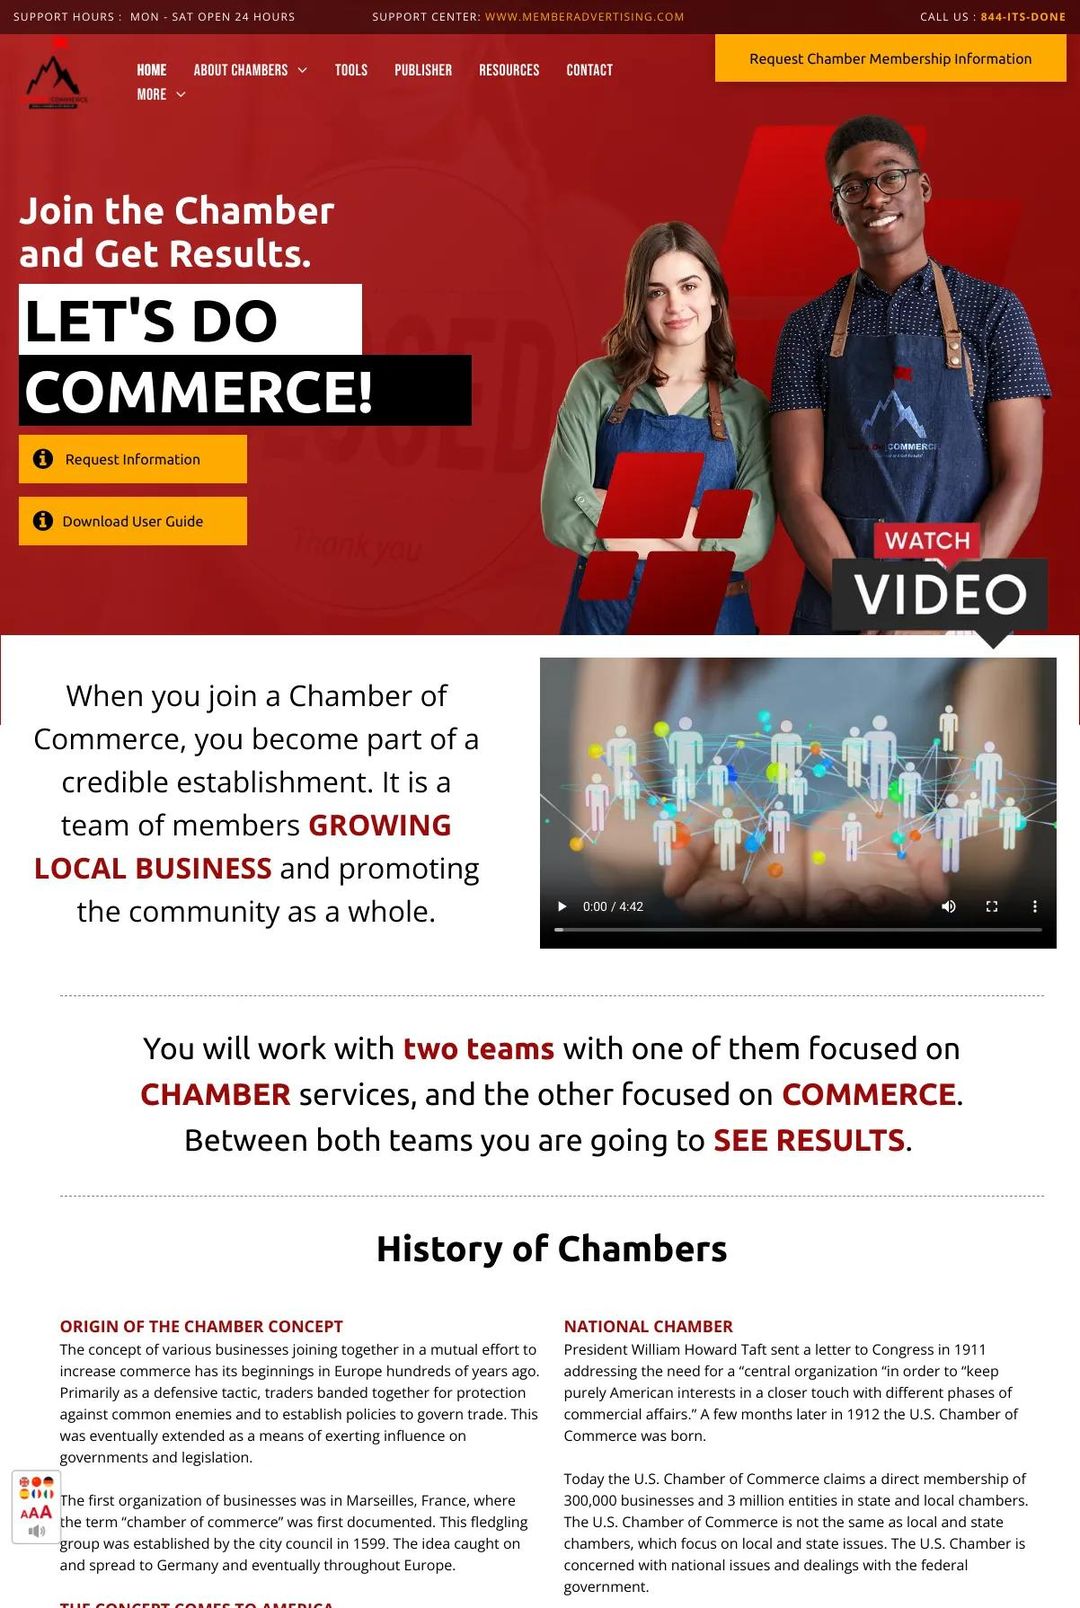 Screenshot 1 of Let's Do Commerce (Example Duda Website)